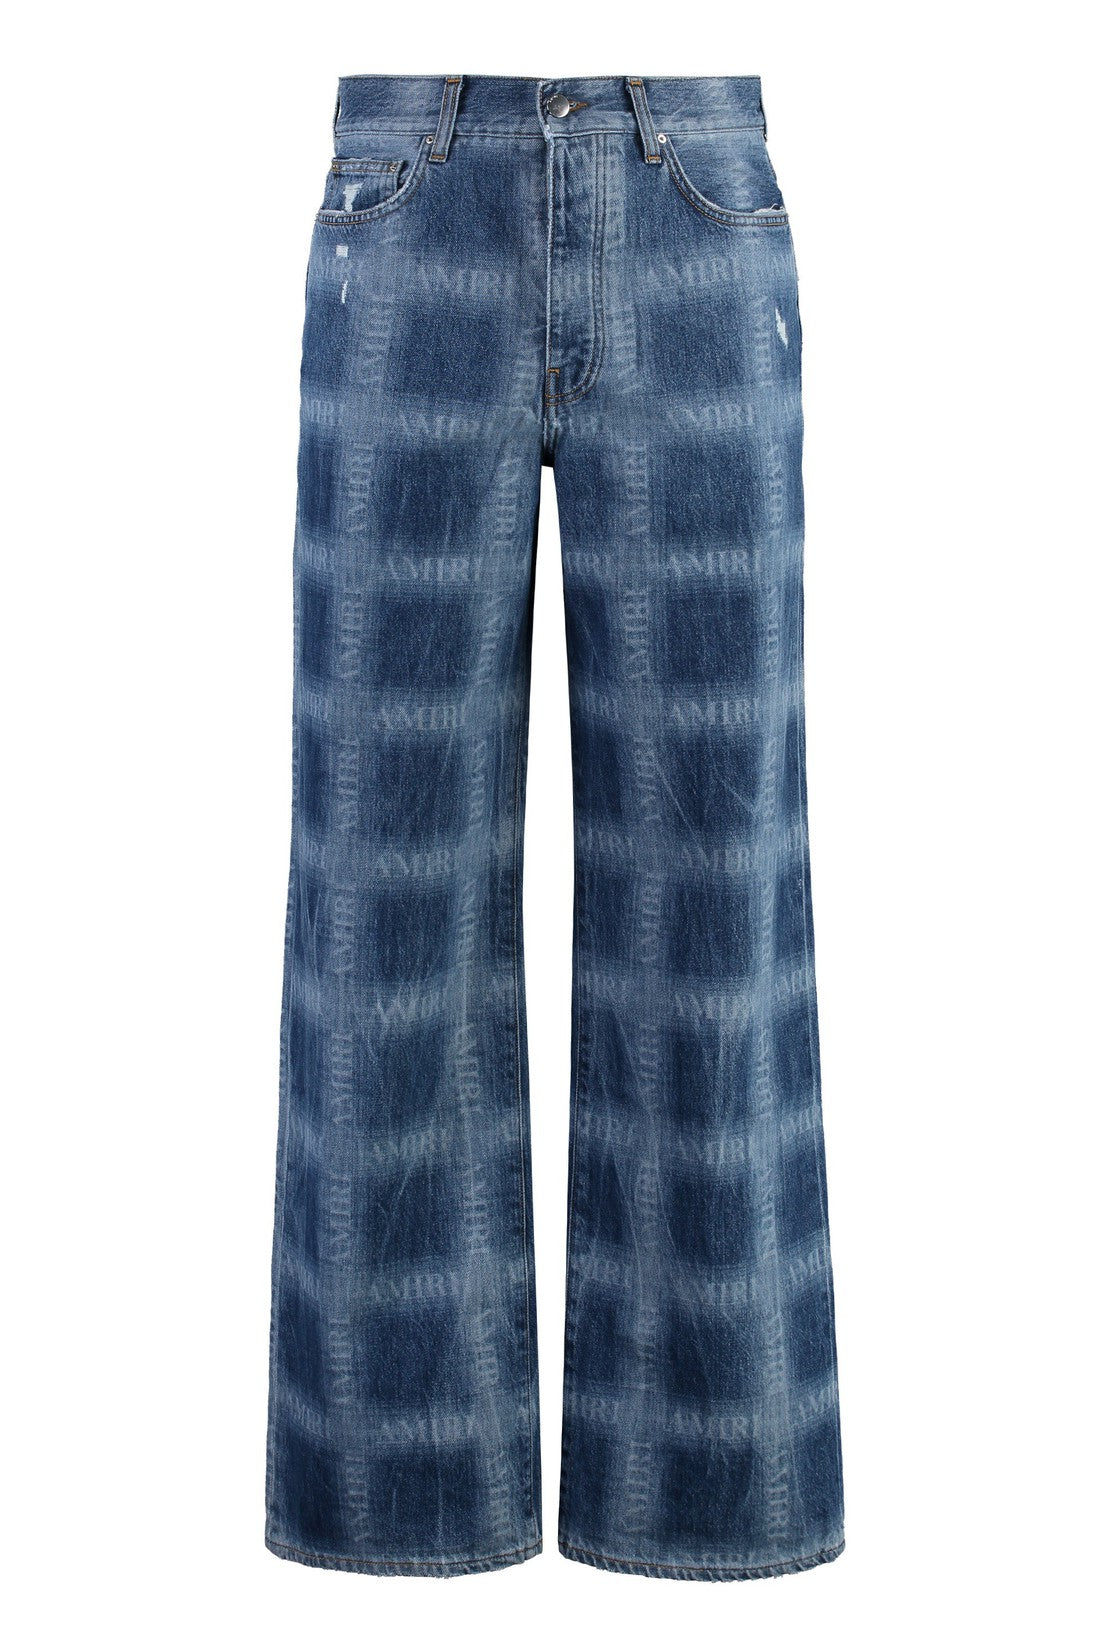 AMIRI-OUTLET-SALE-Wide-leg jeans-ARCHIVIST